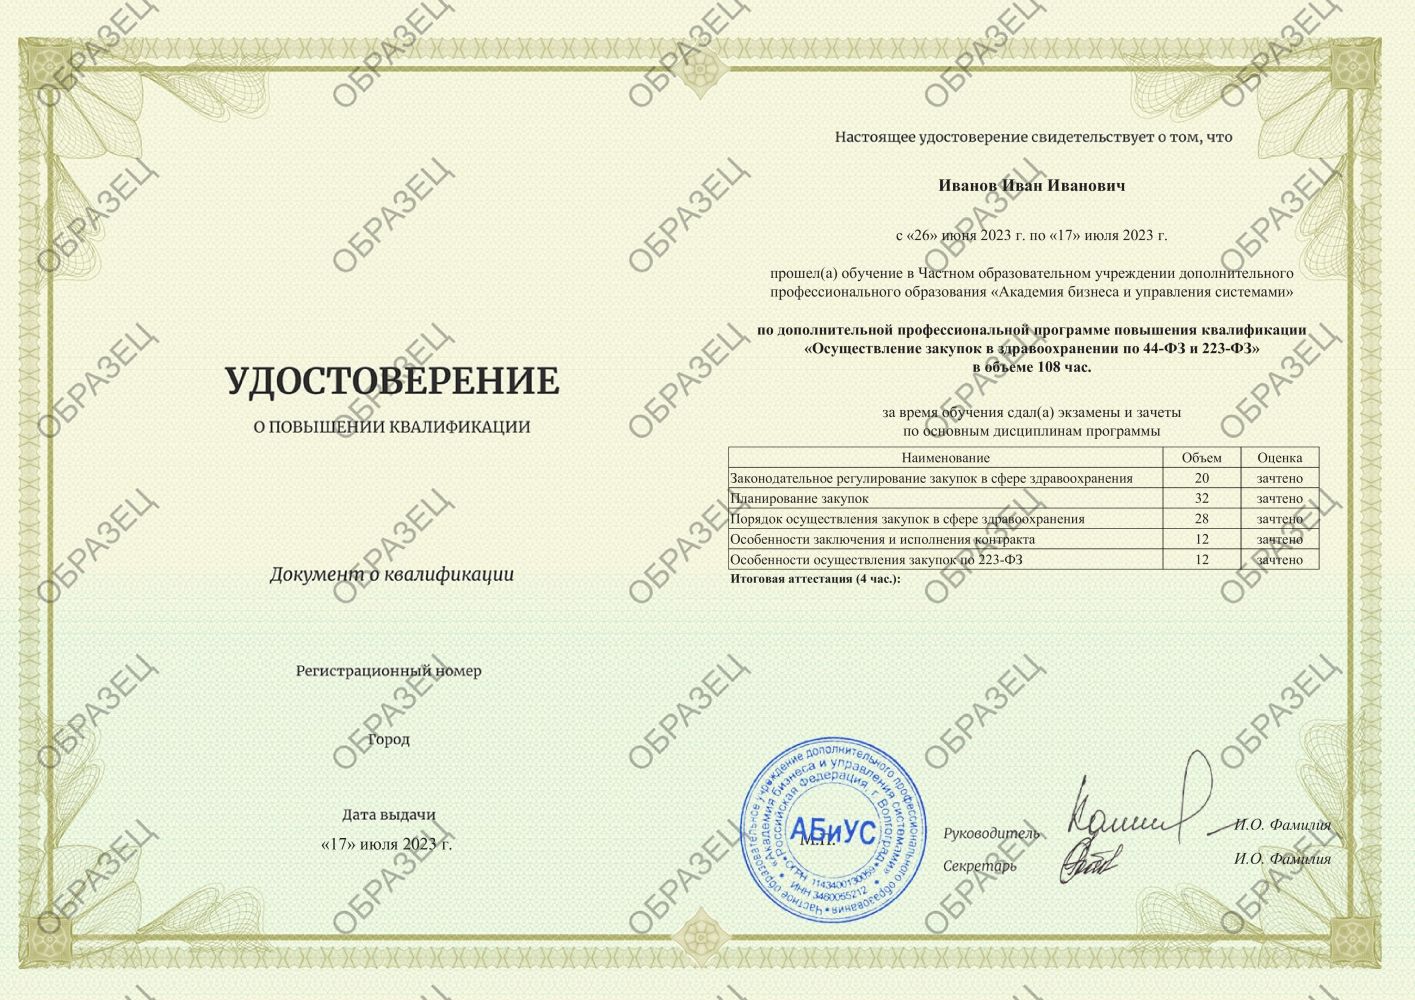 Удостоверение Осуществление закупок в здравоохранении по 44-ФЗ и 223-ФЗ 108 часов 6125 руб.